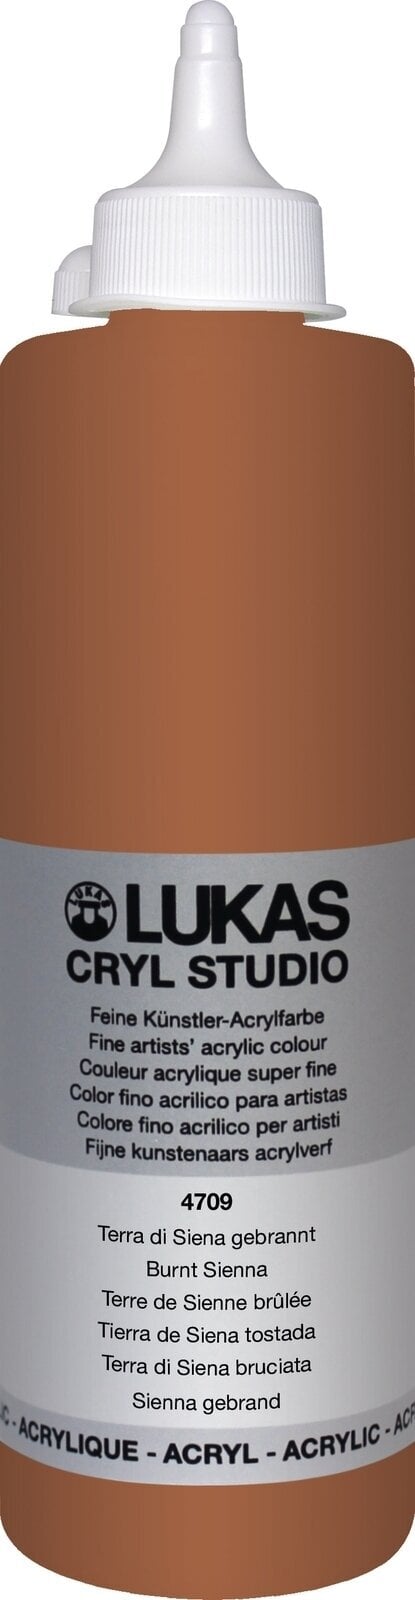 Peinture acrylique Lukas Cryl Studio Acrylic Paint Plastic Bottle Peinture acrylique Burnt Sienna 500 ml 1 pc